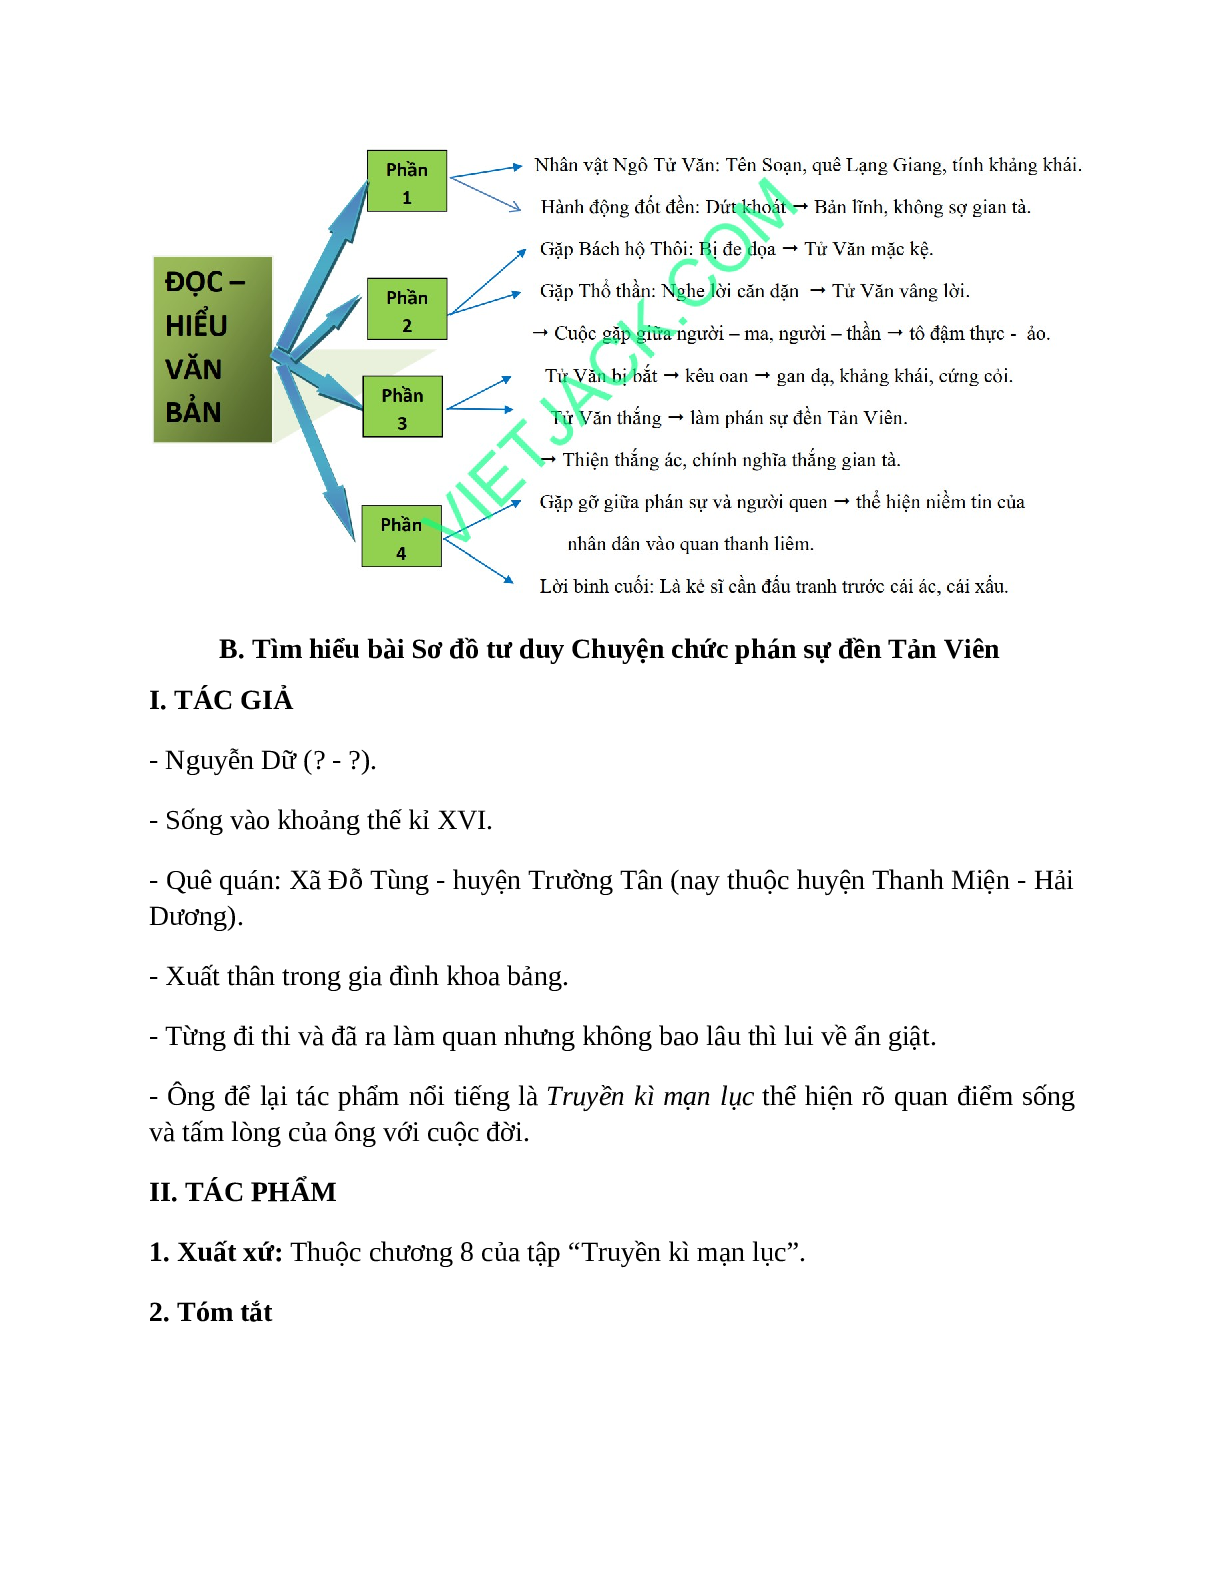 Sơ đồ tư duy bài Chuyện chức phán sự đền Tản Viên dễ nhớ, ngắn nhất - Ngữ văn lớp 10 (trang 2)